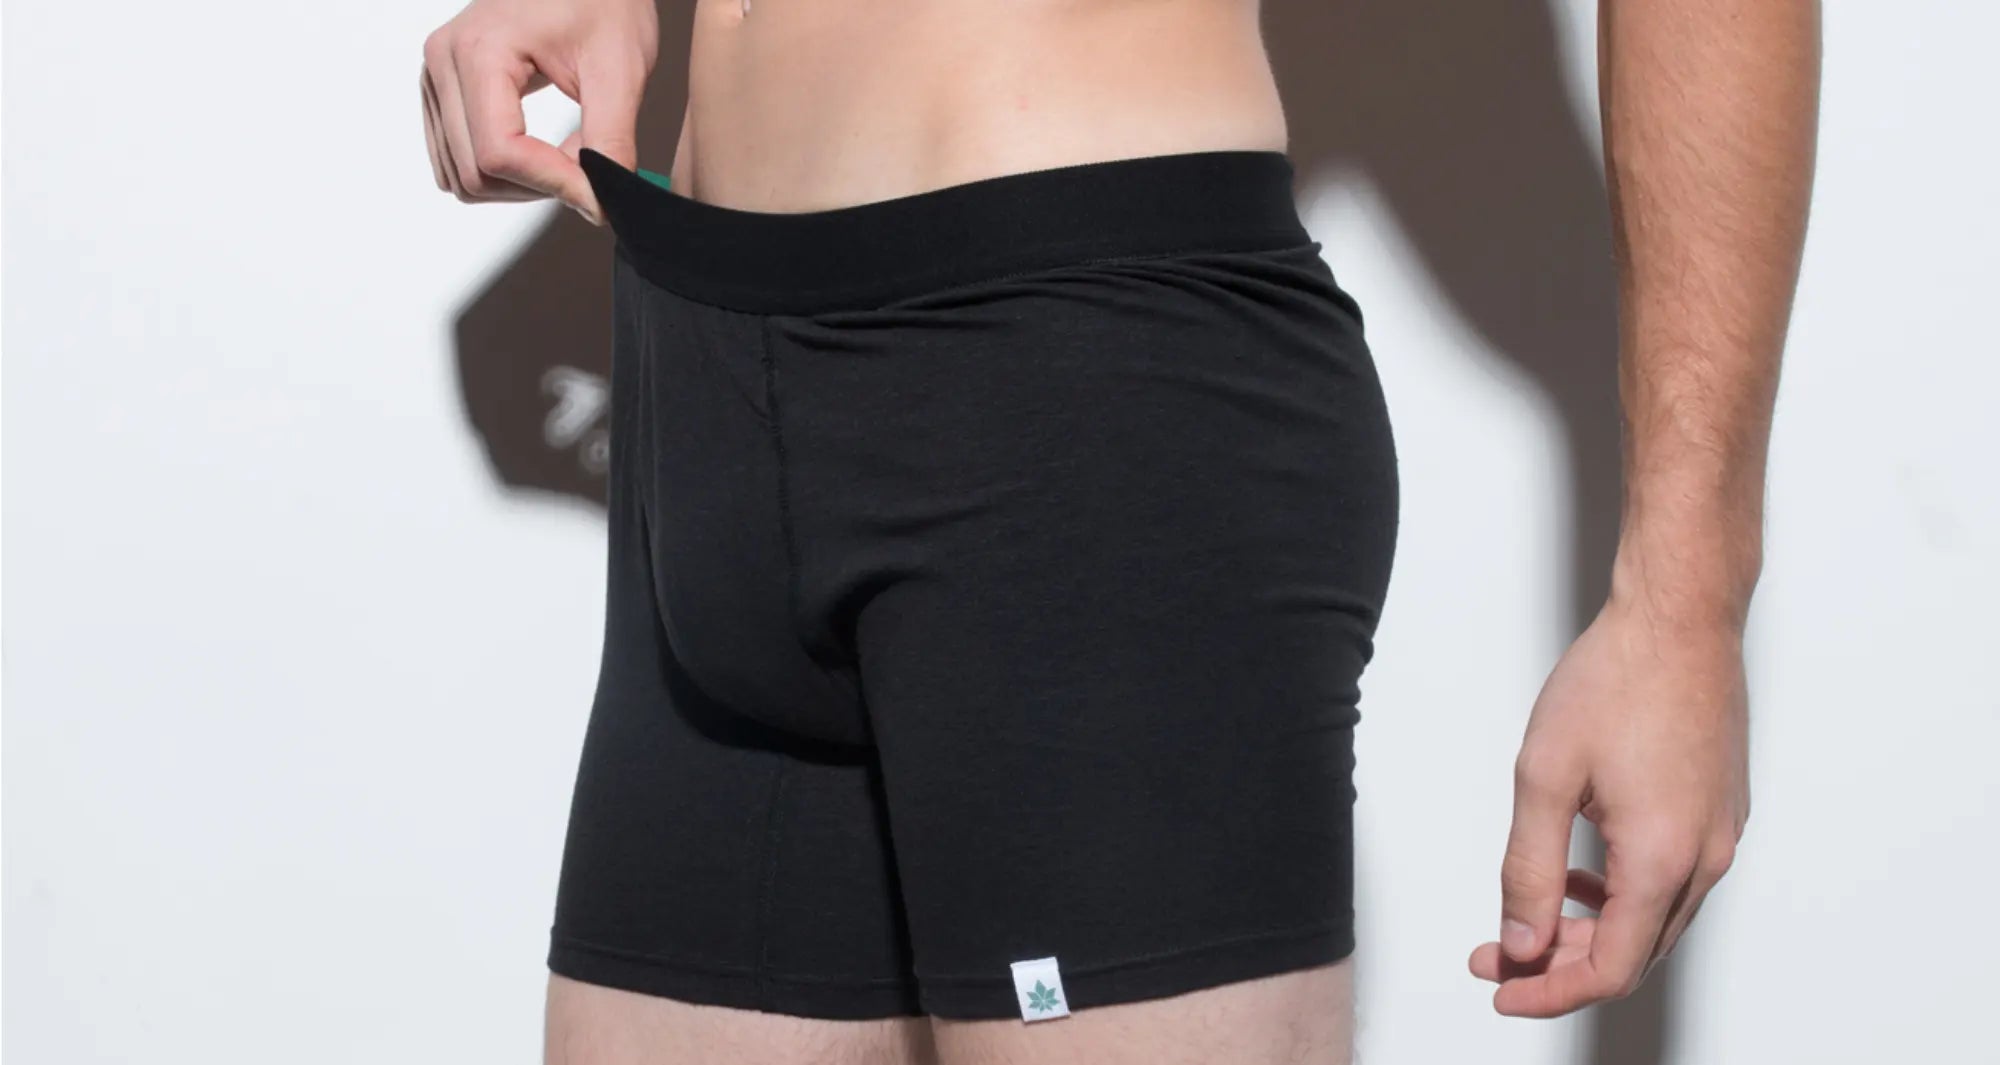 Boxer Briefs That Don't Ride Up: The Key to Great Men's Underwear – Culprit  Underwear